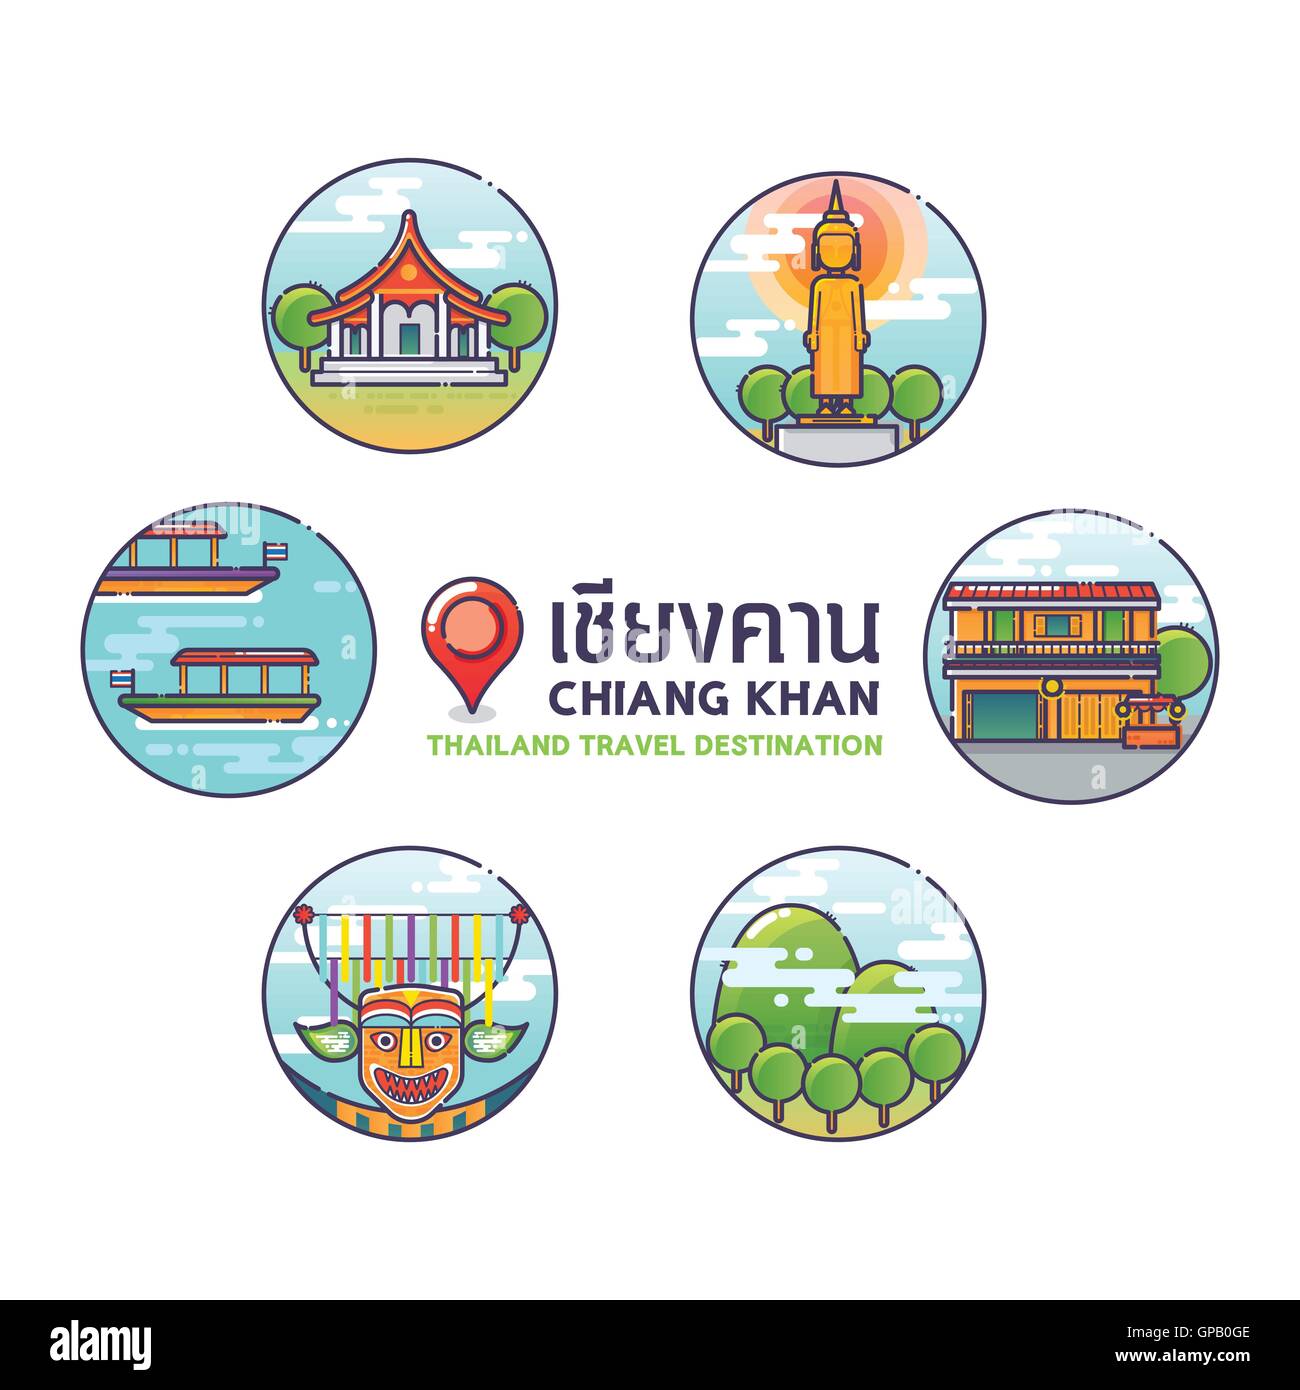 Vektor-Illustration der Chiang Khan bunte Icons, Thailand Travel Destination Concept.Trendy linearen Stil. Stock Vektor